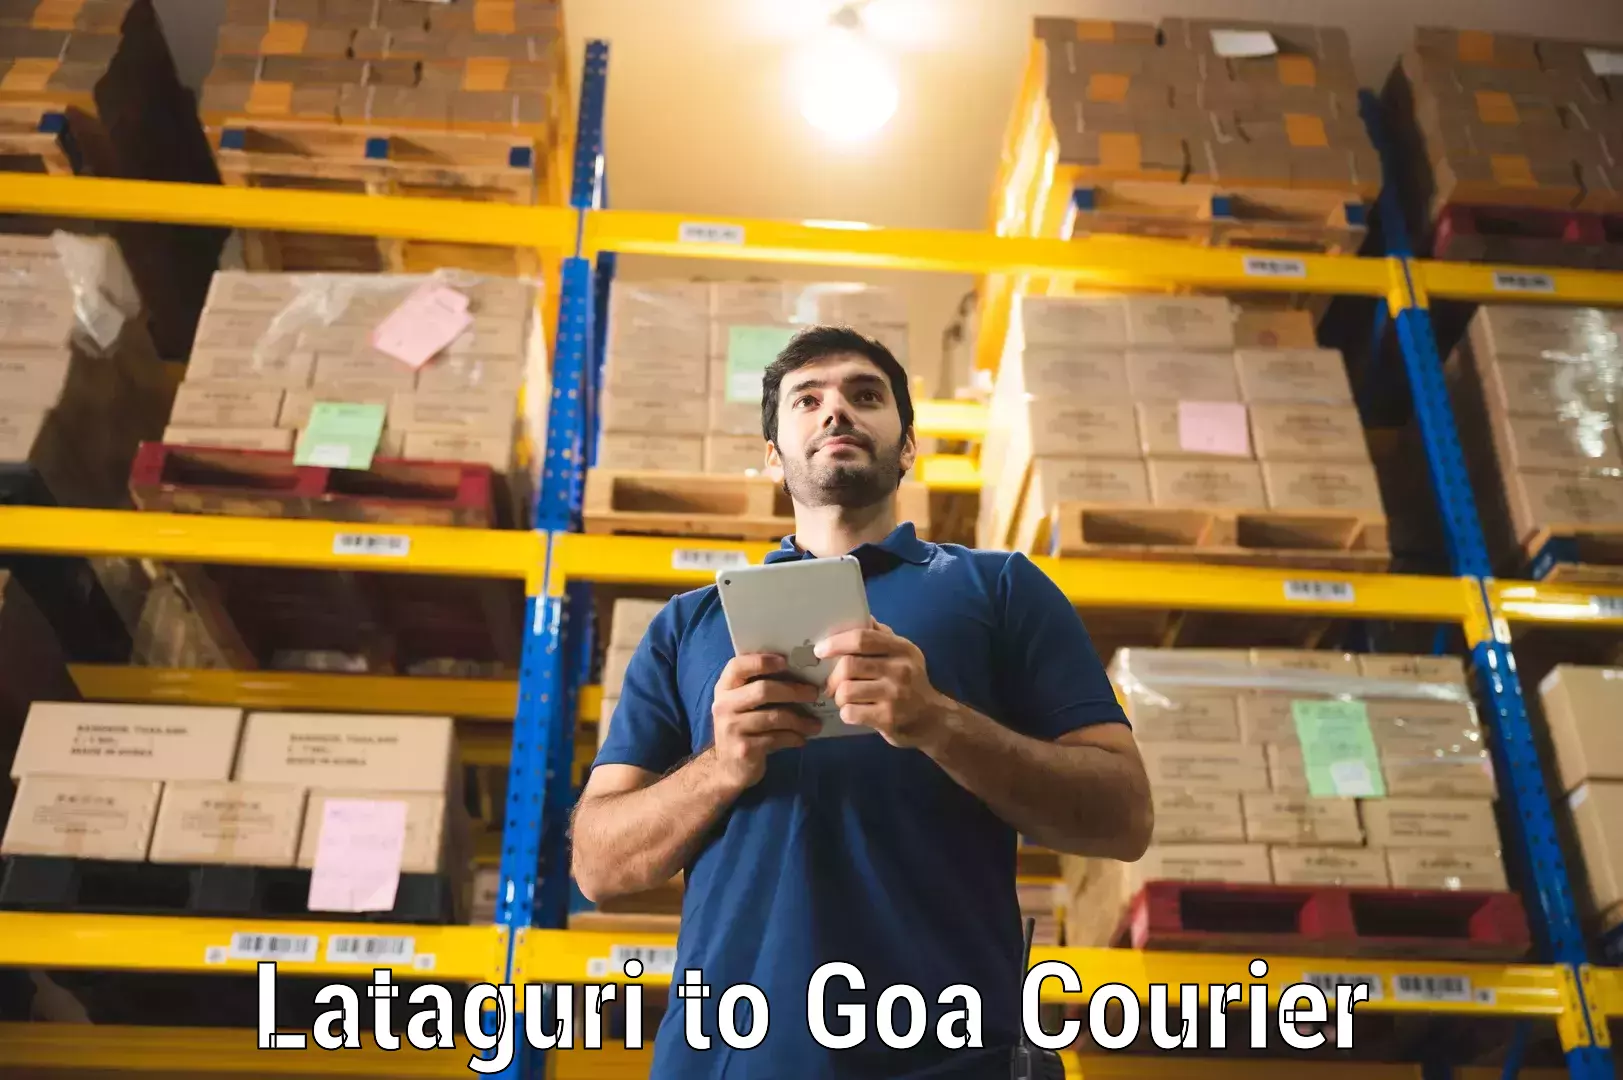 Digital courier platforms Lataguri to Goa